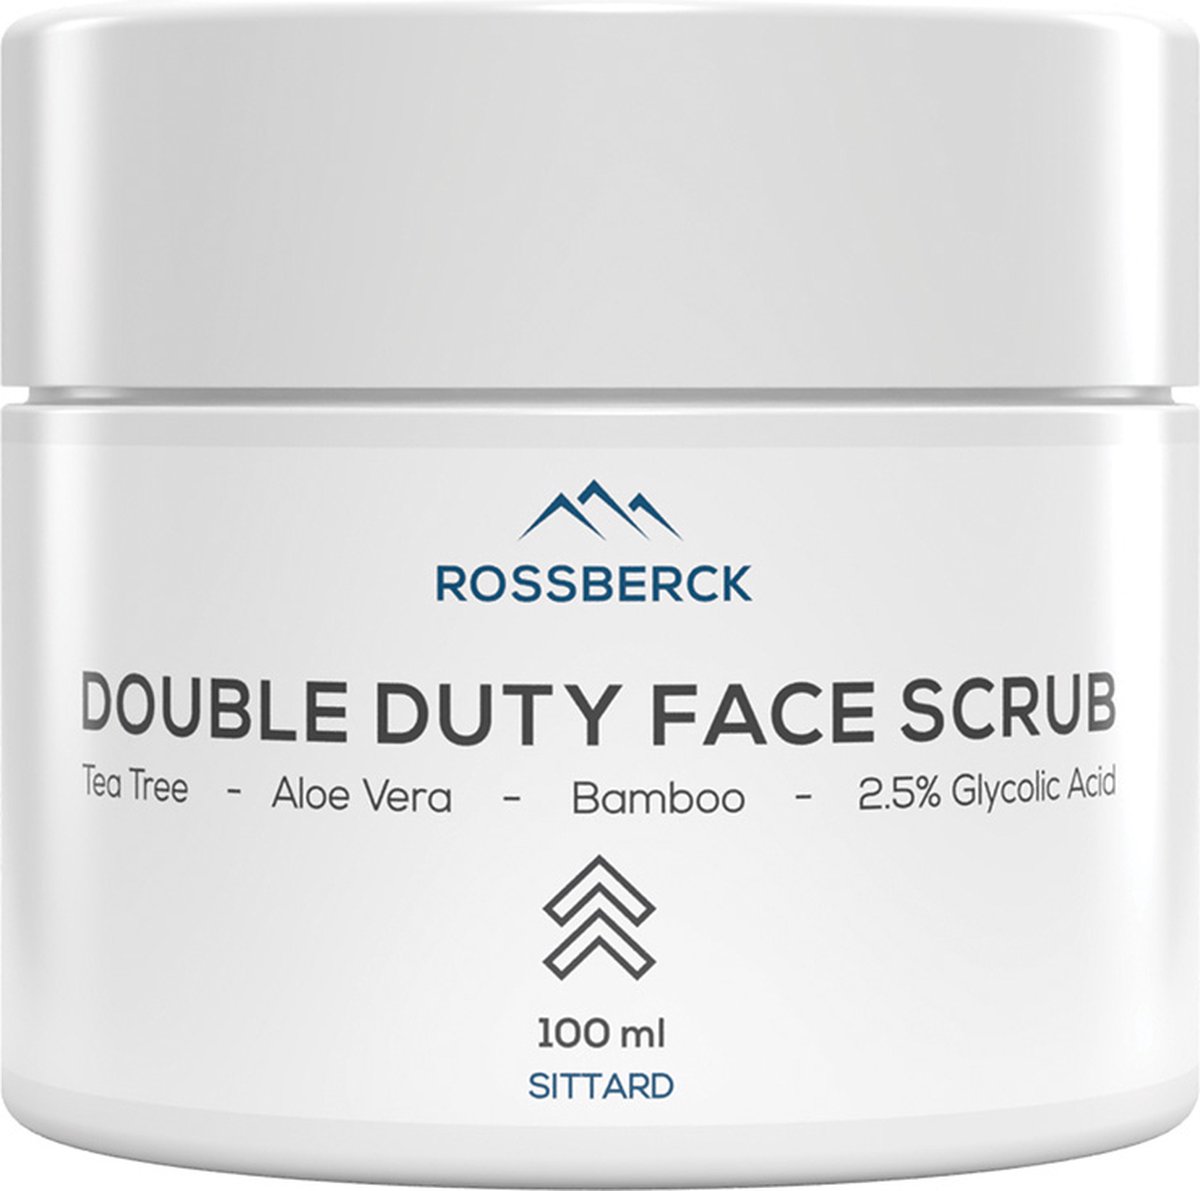 Rossberck Double Duty Face Scrub